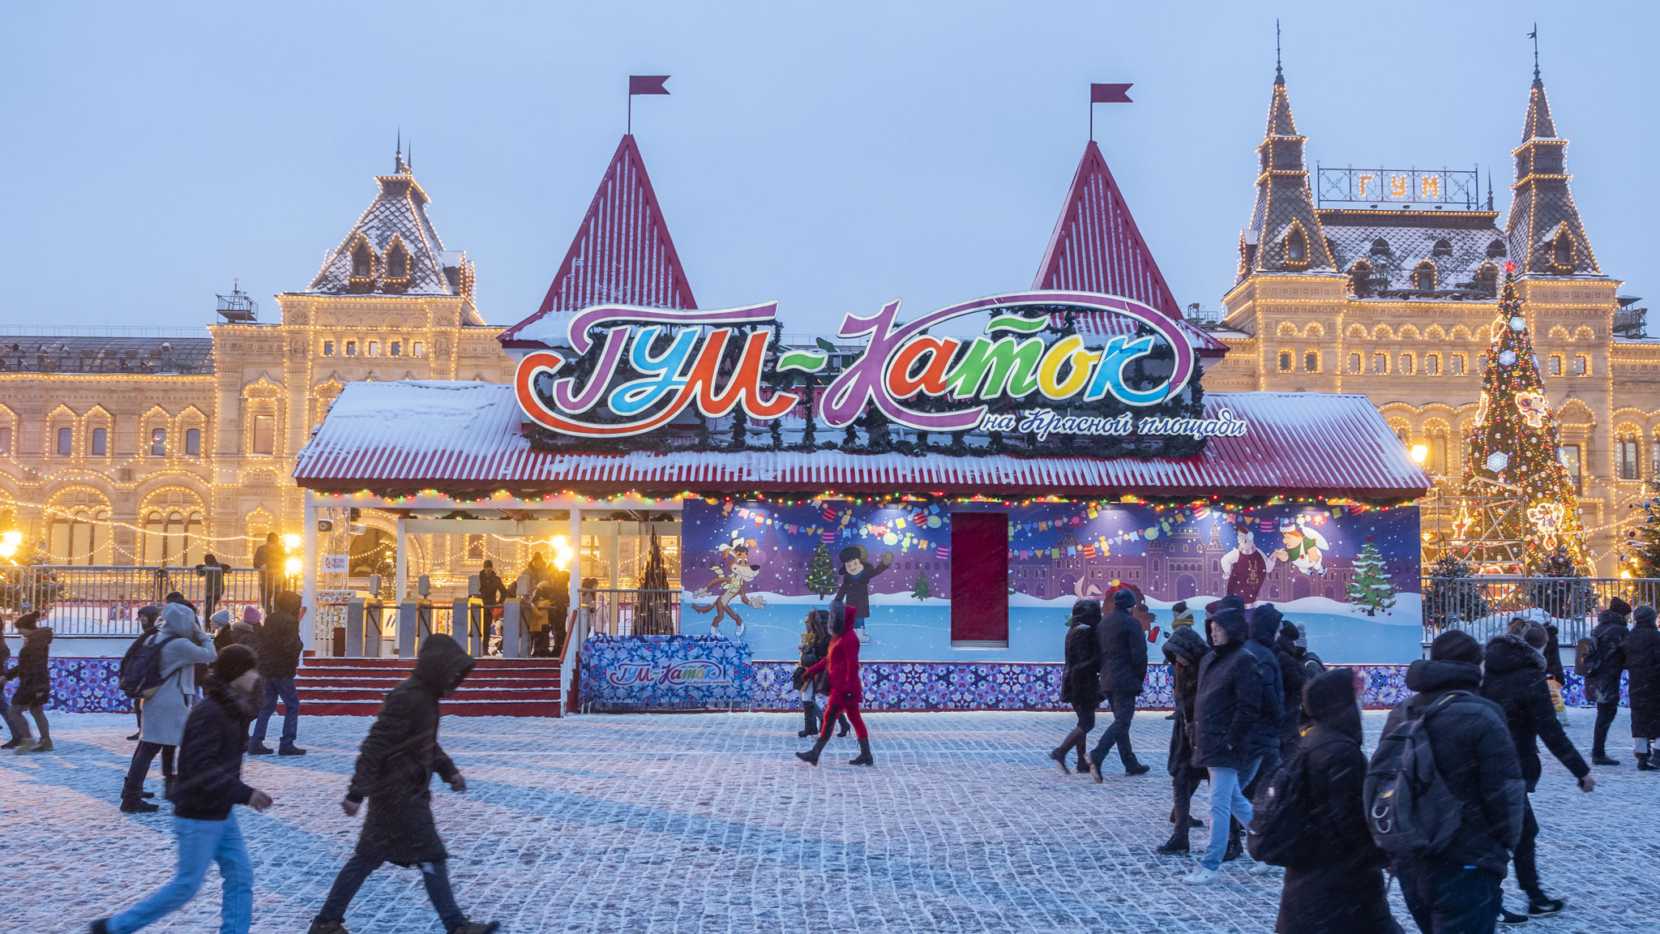 Преимущества самостоятельного туризма по Москве Достопримечательности, которые можно успеть посетить за 2 дня Нестандартные маршруты и советы